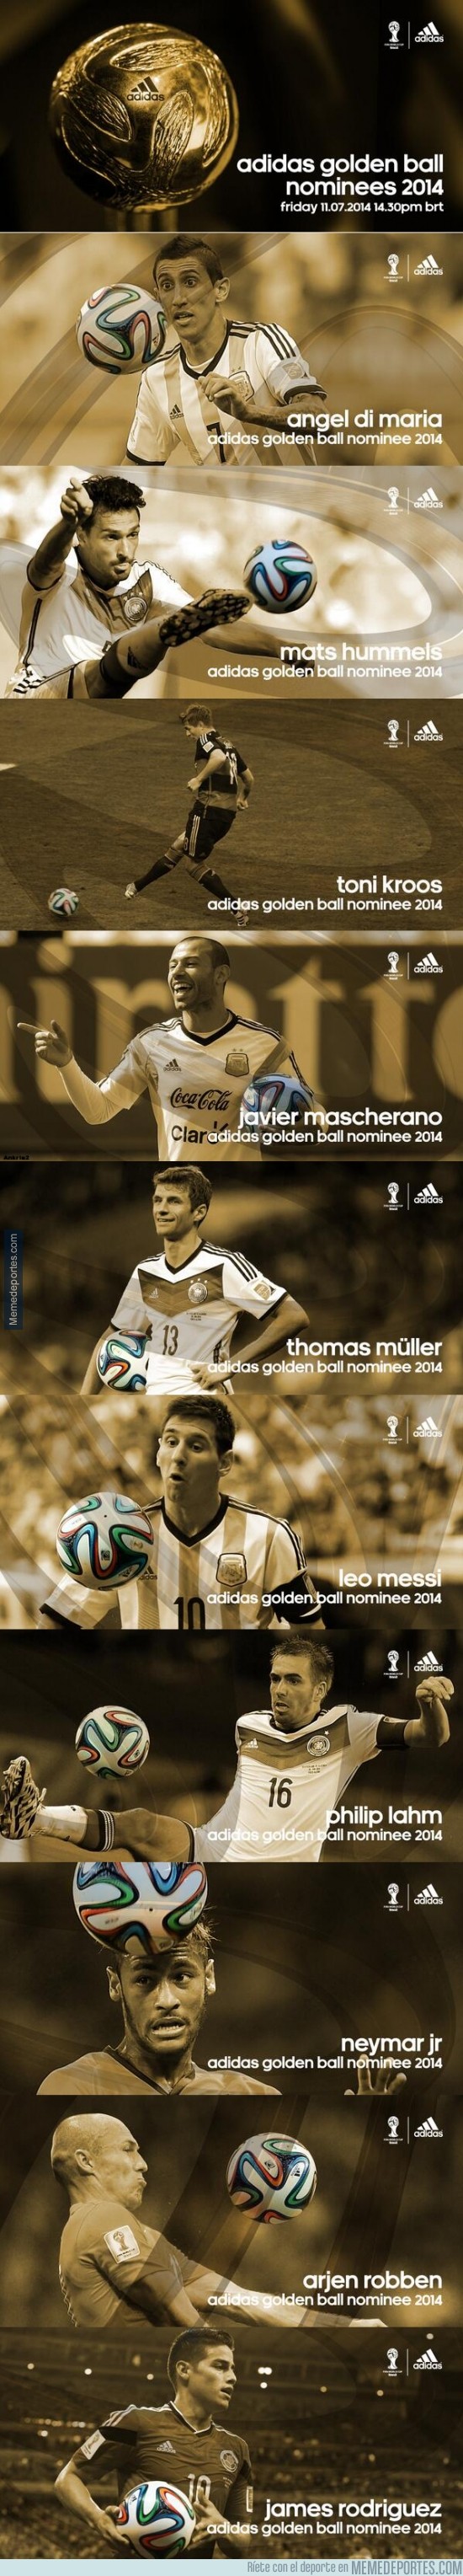 360397 - Los nominados al Balón de Oro del Mundial, ¿con quién te quedas?